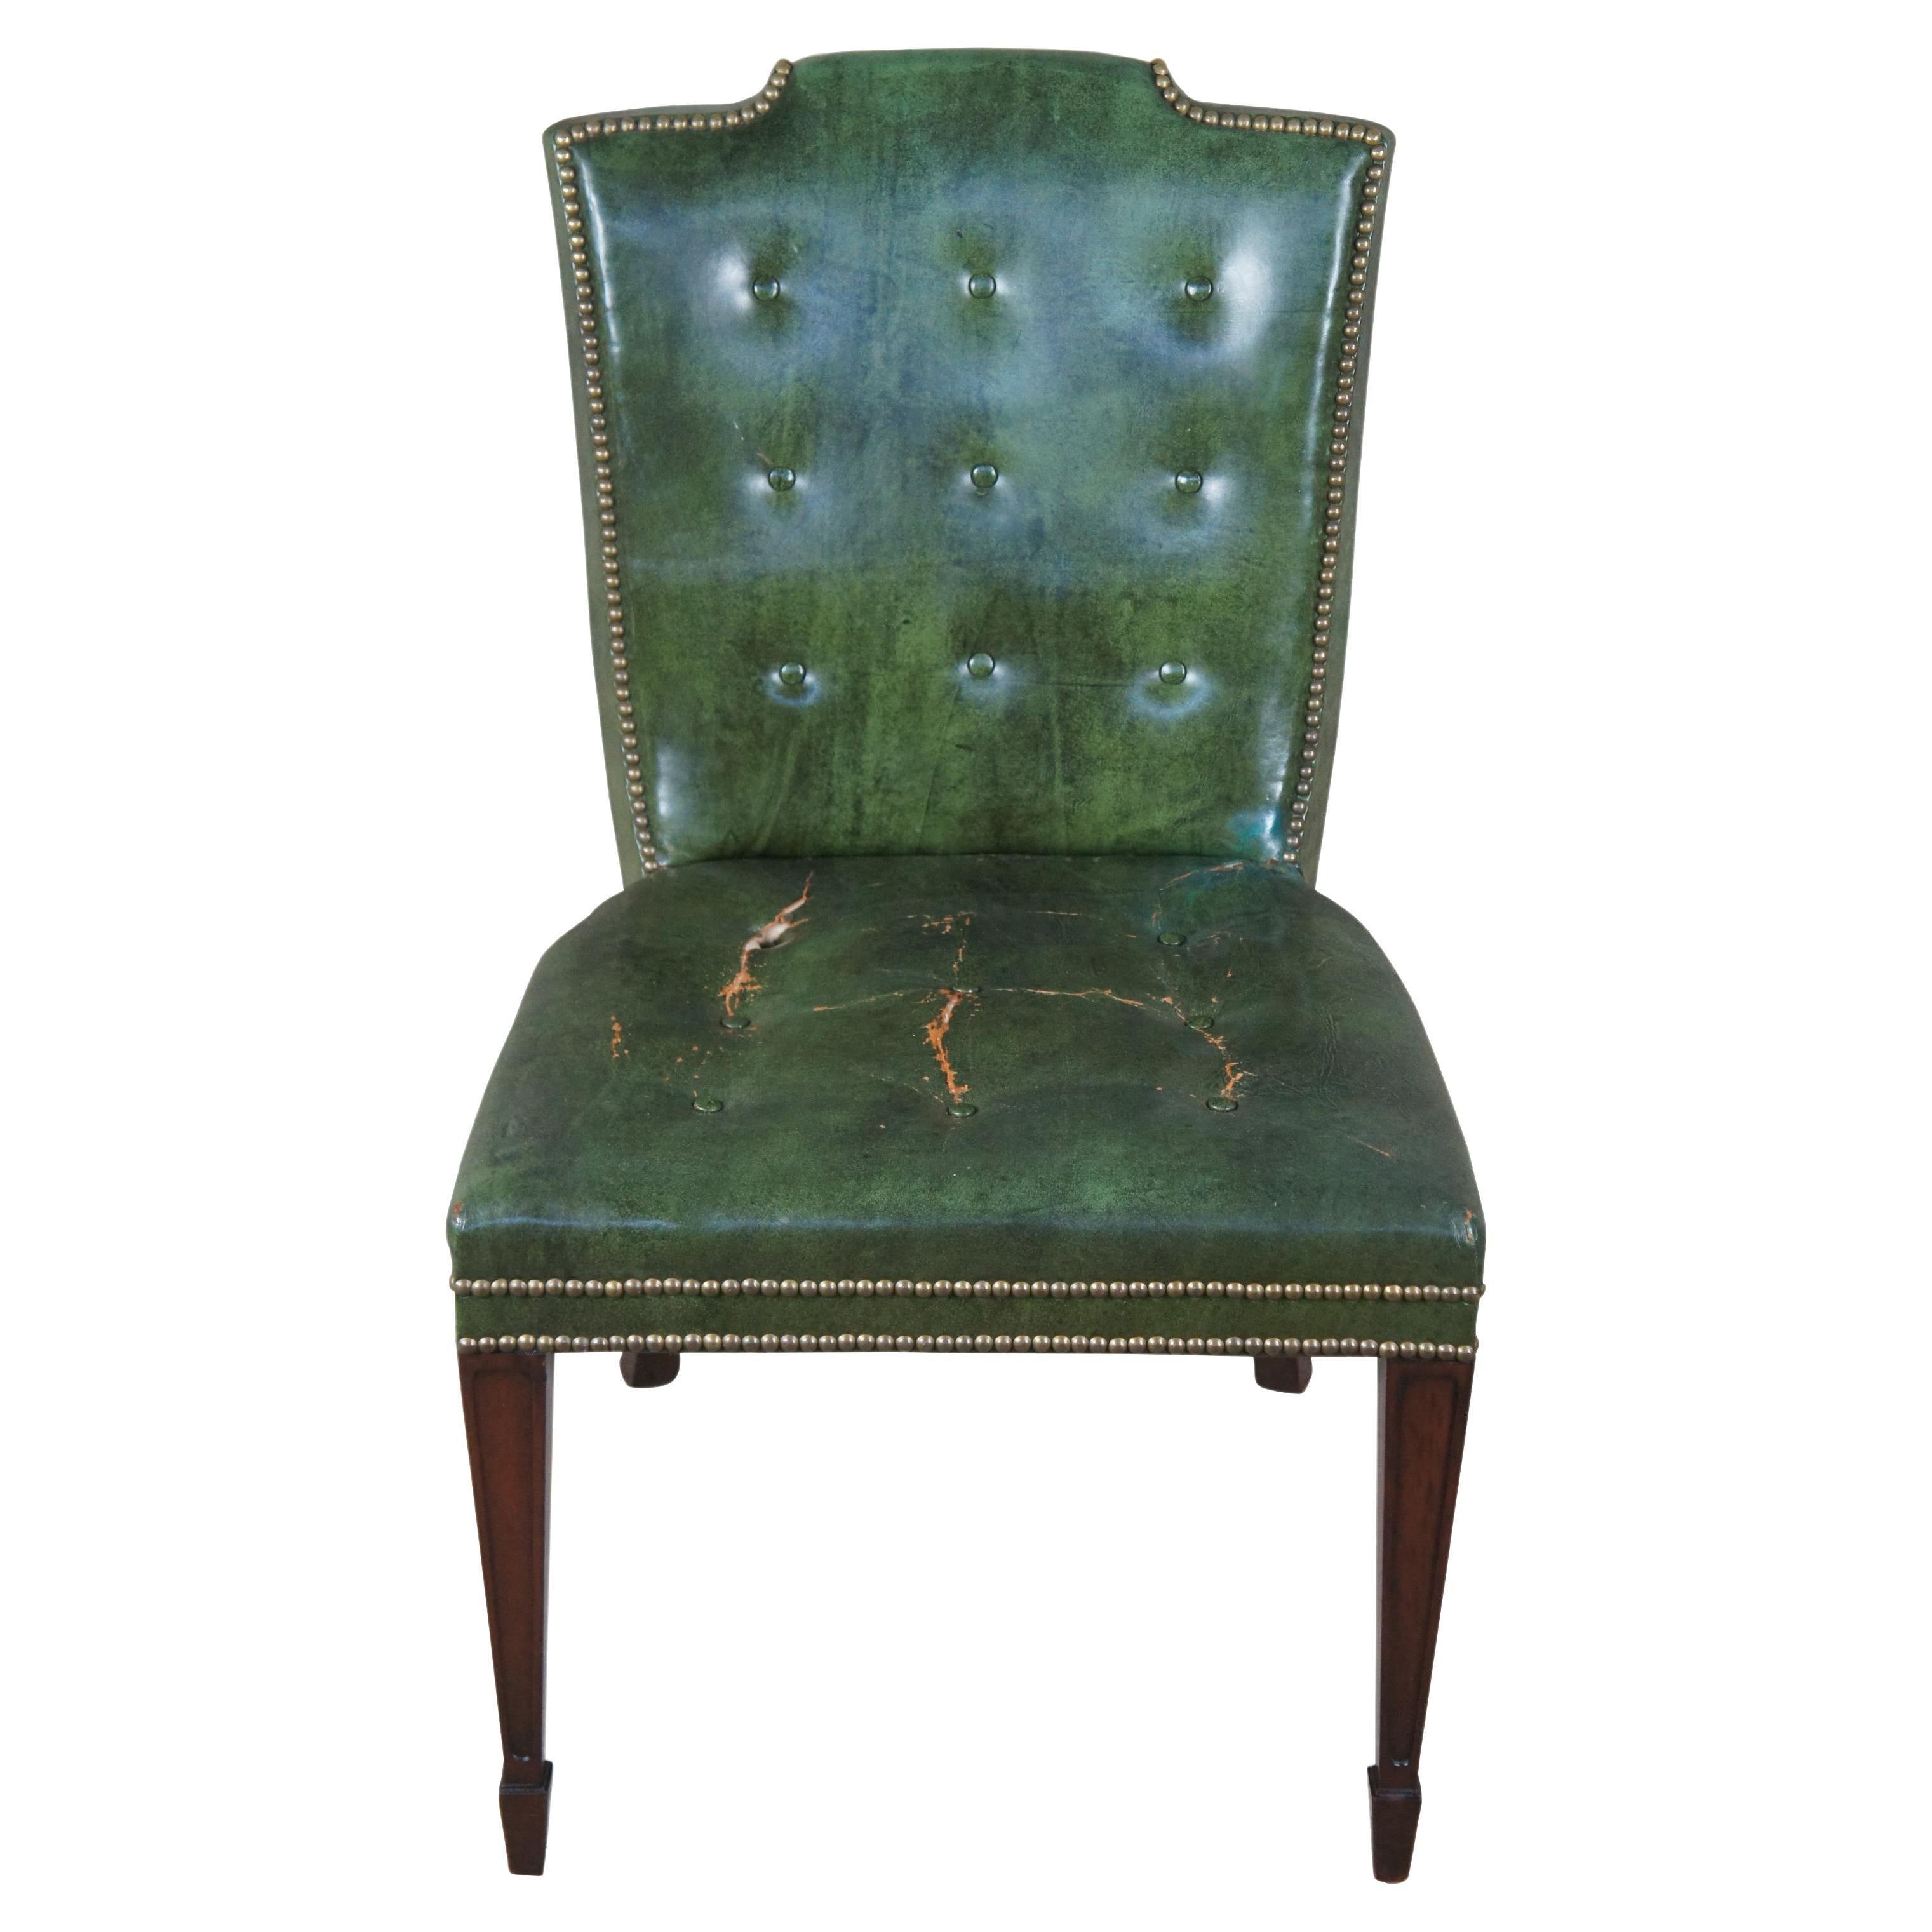 Superbe chaise d'appoint ou de bureau de Heritage Furniture, vers les années 1950. Heritage est devenu par la suite Drexel Heritage. La structure en acajou s'inspire des styles Sheraton et fédéral. Le dossier est incurvé et tapissé de cuir vert avec